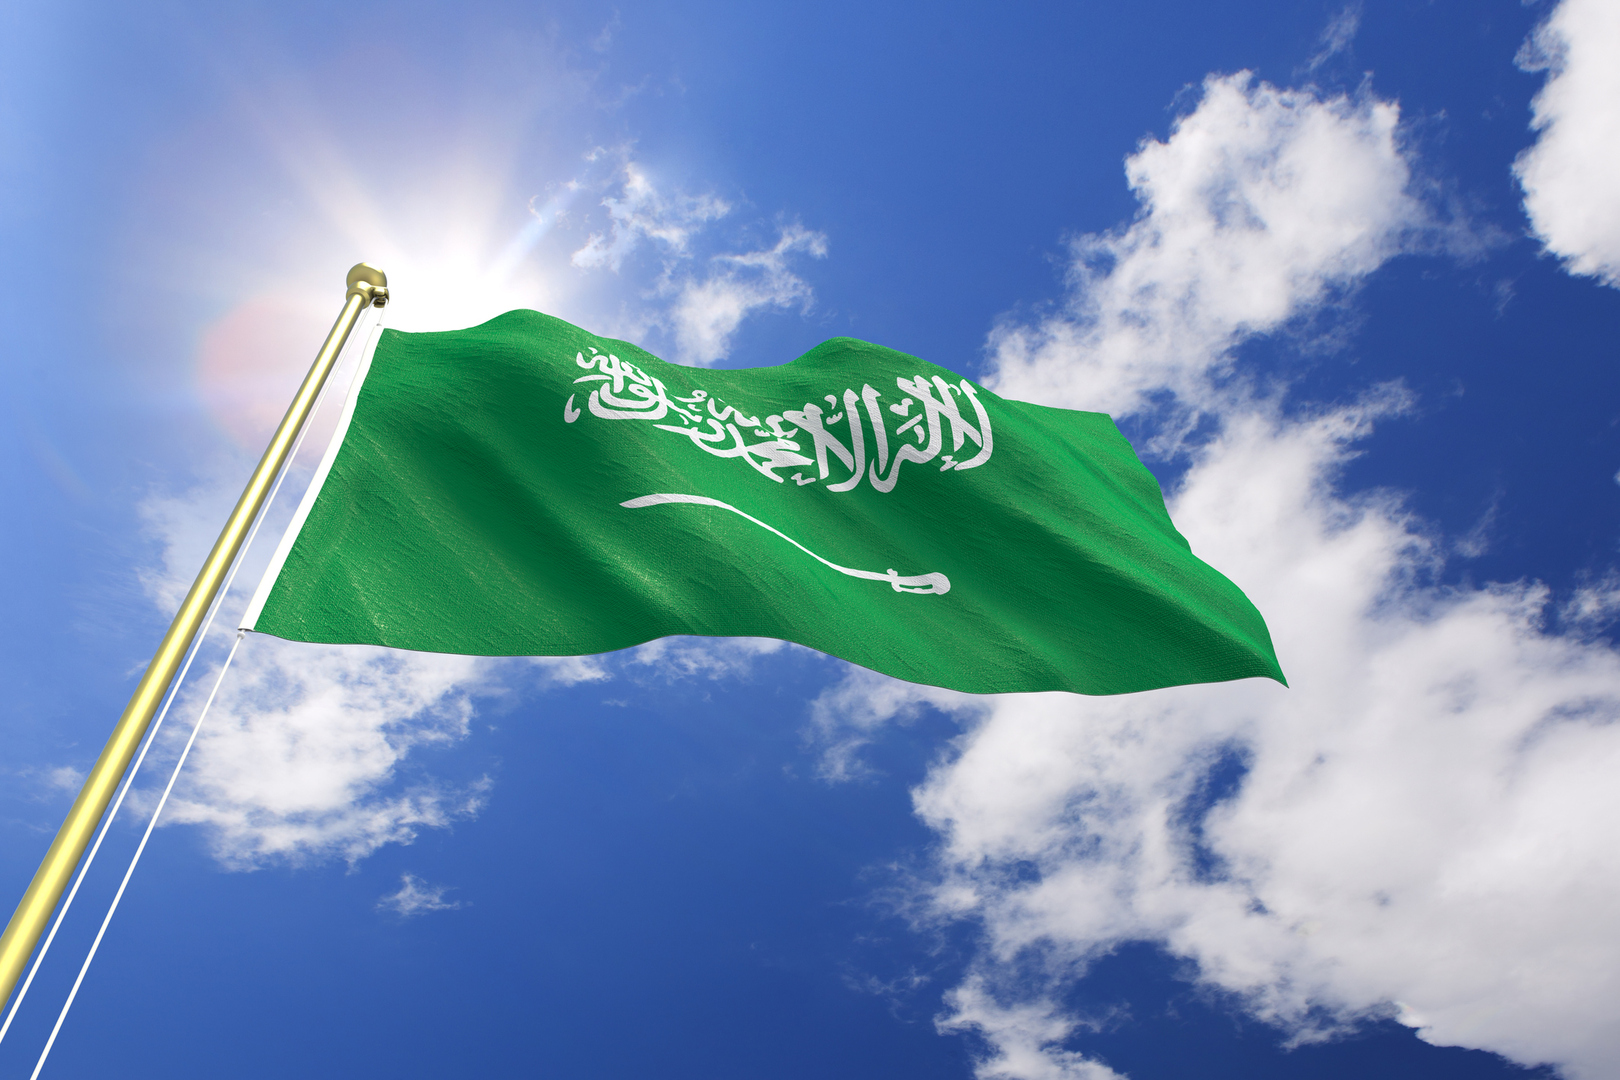 مسؤولون ماليون سعوديون يقللون من مخاطر ما يتهدد القطاع المصرفي العالمي